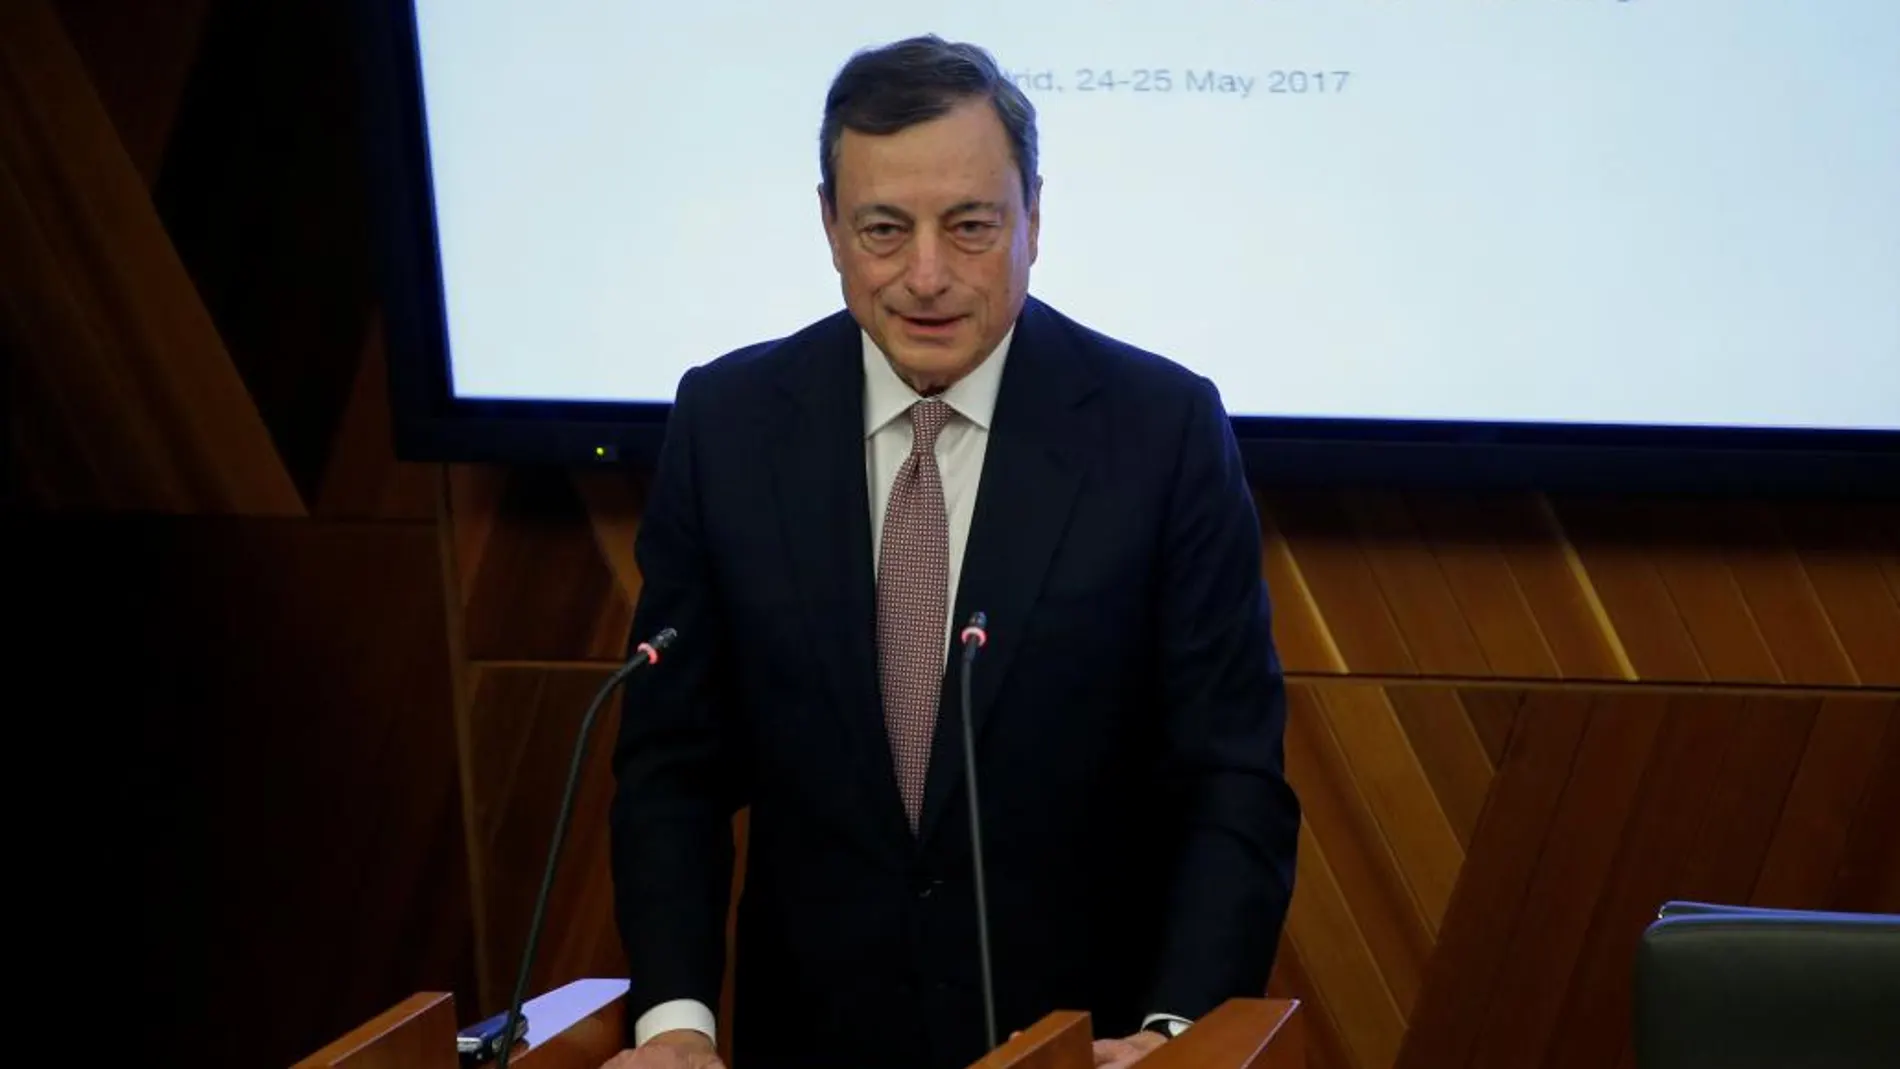 El presidente del BCE en su conferencia de hoy, Mario Draghi